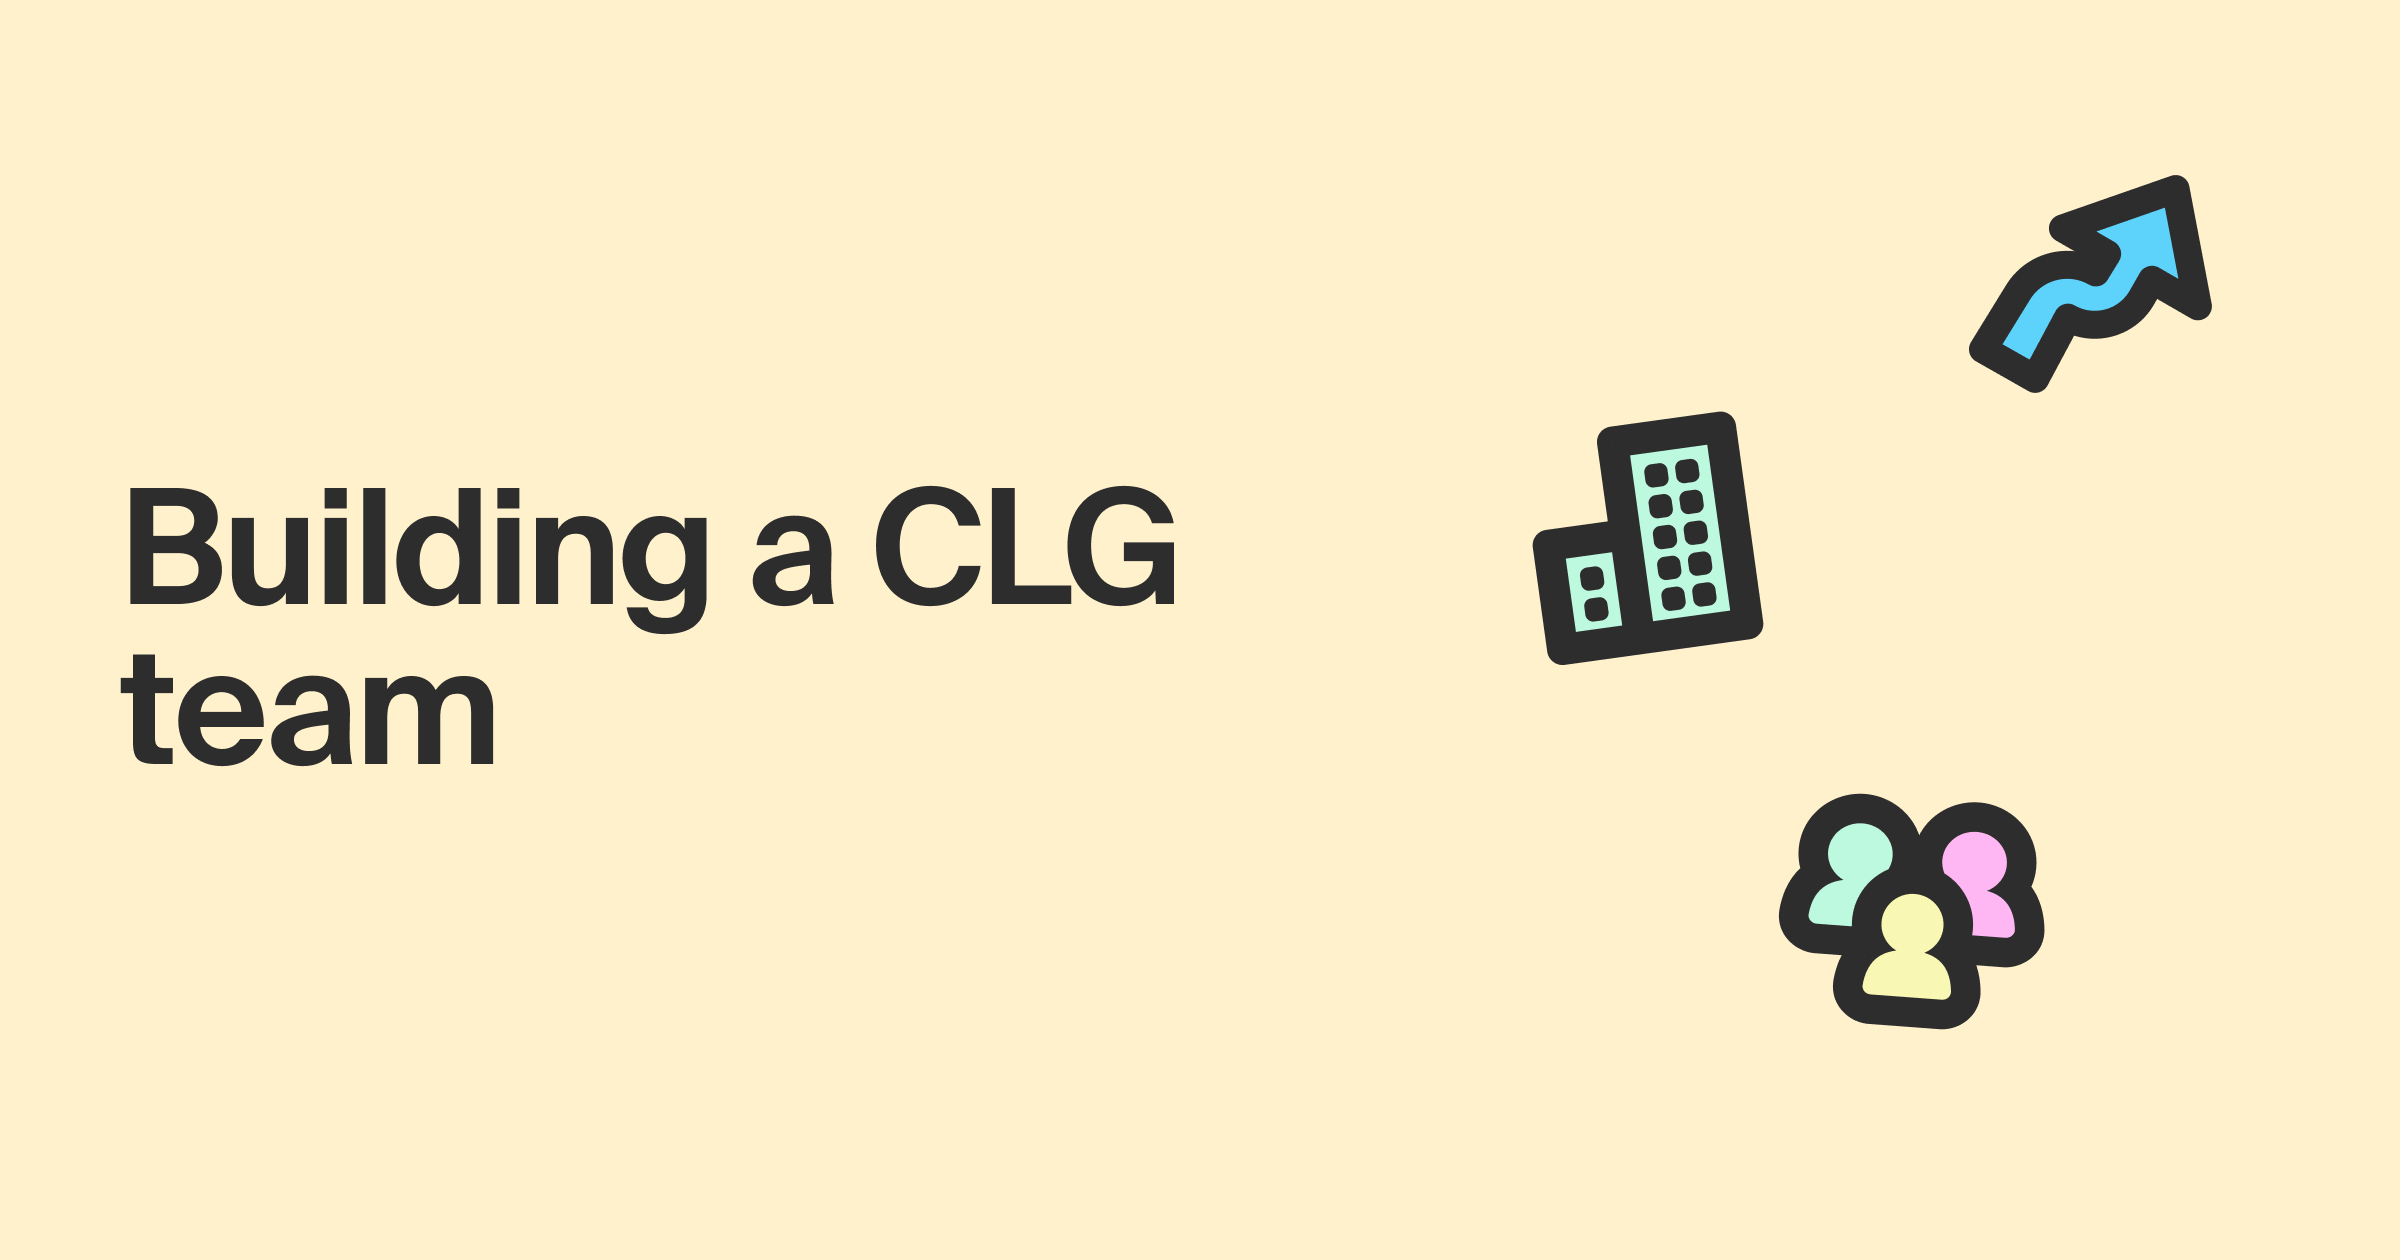 Building a CLG team